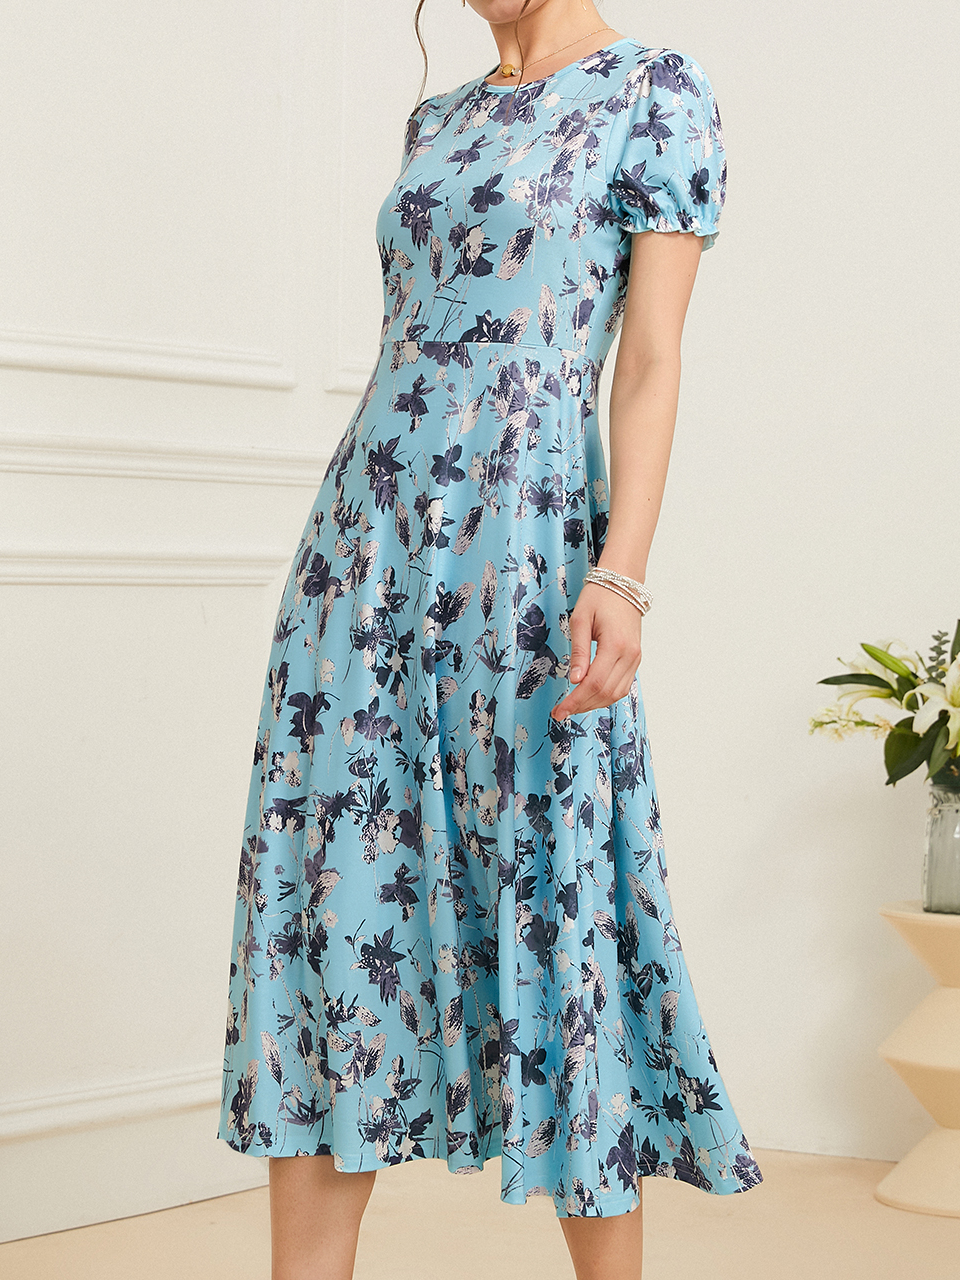 Cotton-Blend Floral Casual Dress